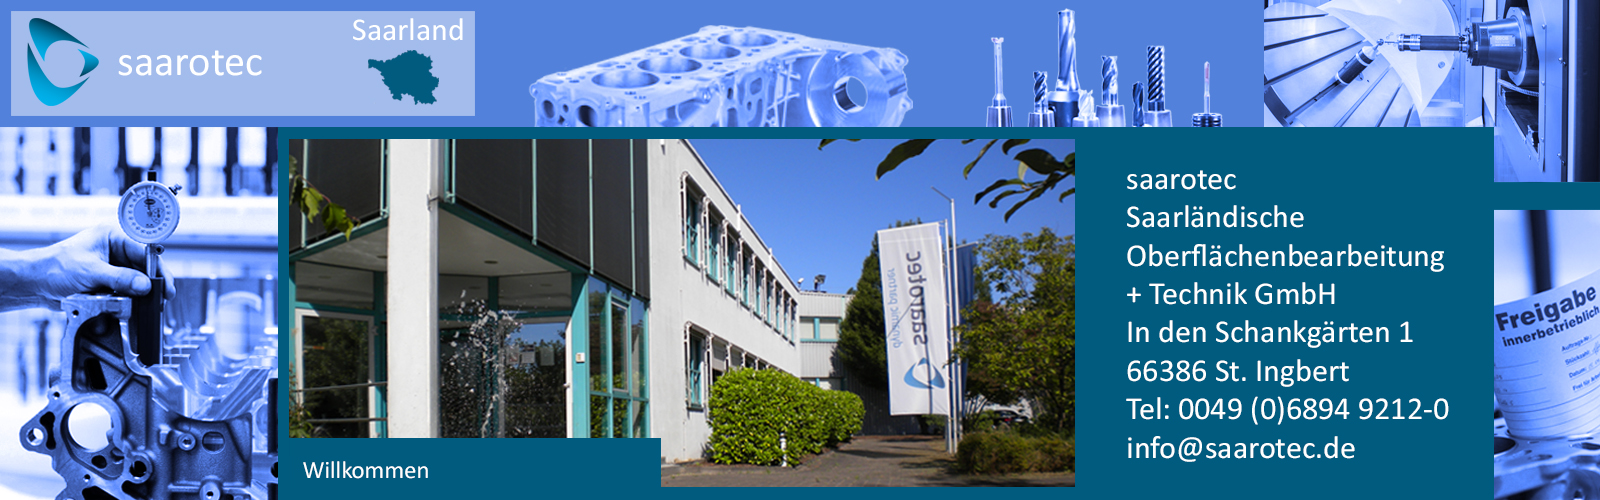 Zulieferer und Dienstleister für das Metallbearbeiten mit moderner CNC-Technik - saarotec Saarländische Oberflächenbearbeitung und Technik GmbH